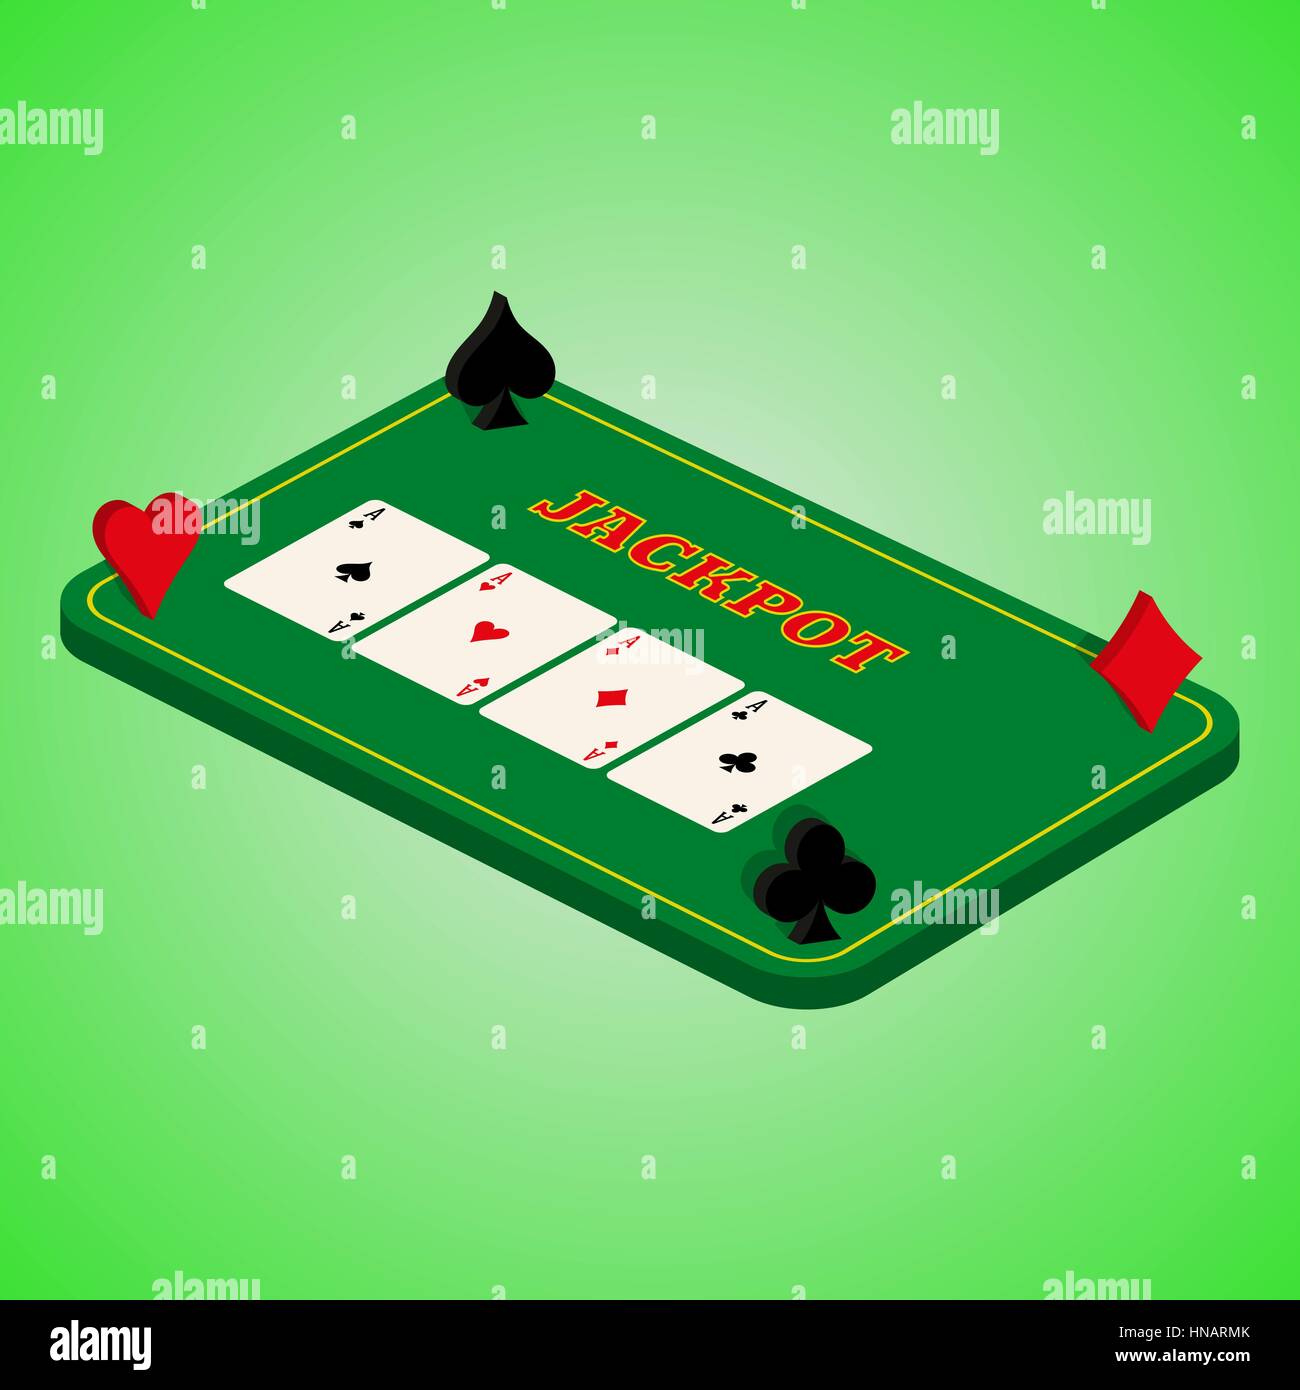 Casino auf einem grünen Hintergrund gesetzt. Spieltisch mit einer Kombination aus Karten. Four of a Kind. Vektor-Illustration für Ihr Design. Plakatwerbung, si Stock Vektor